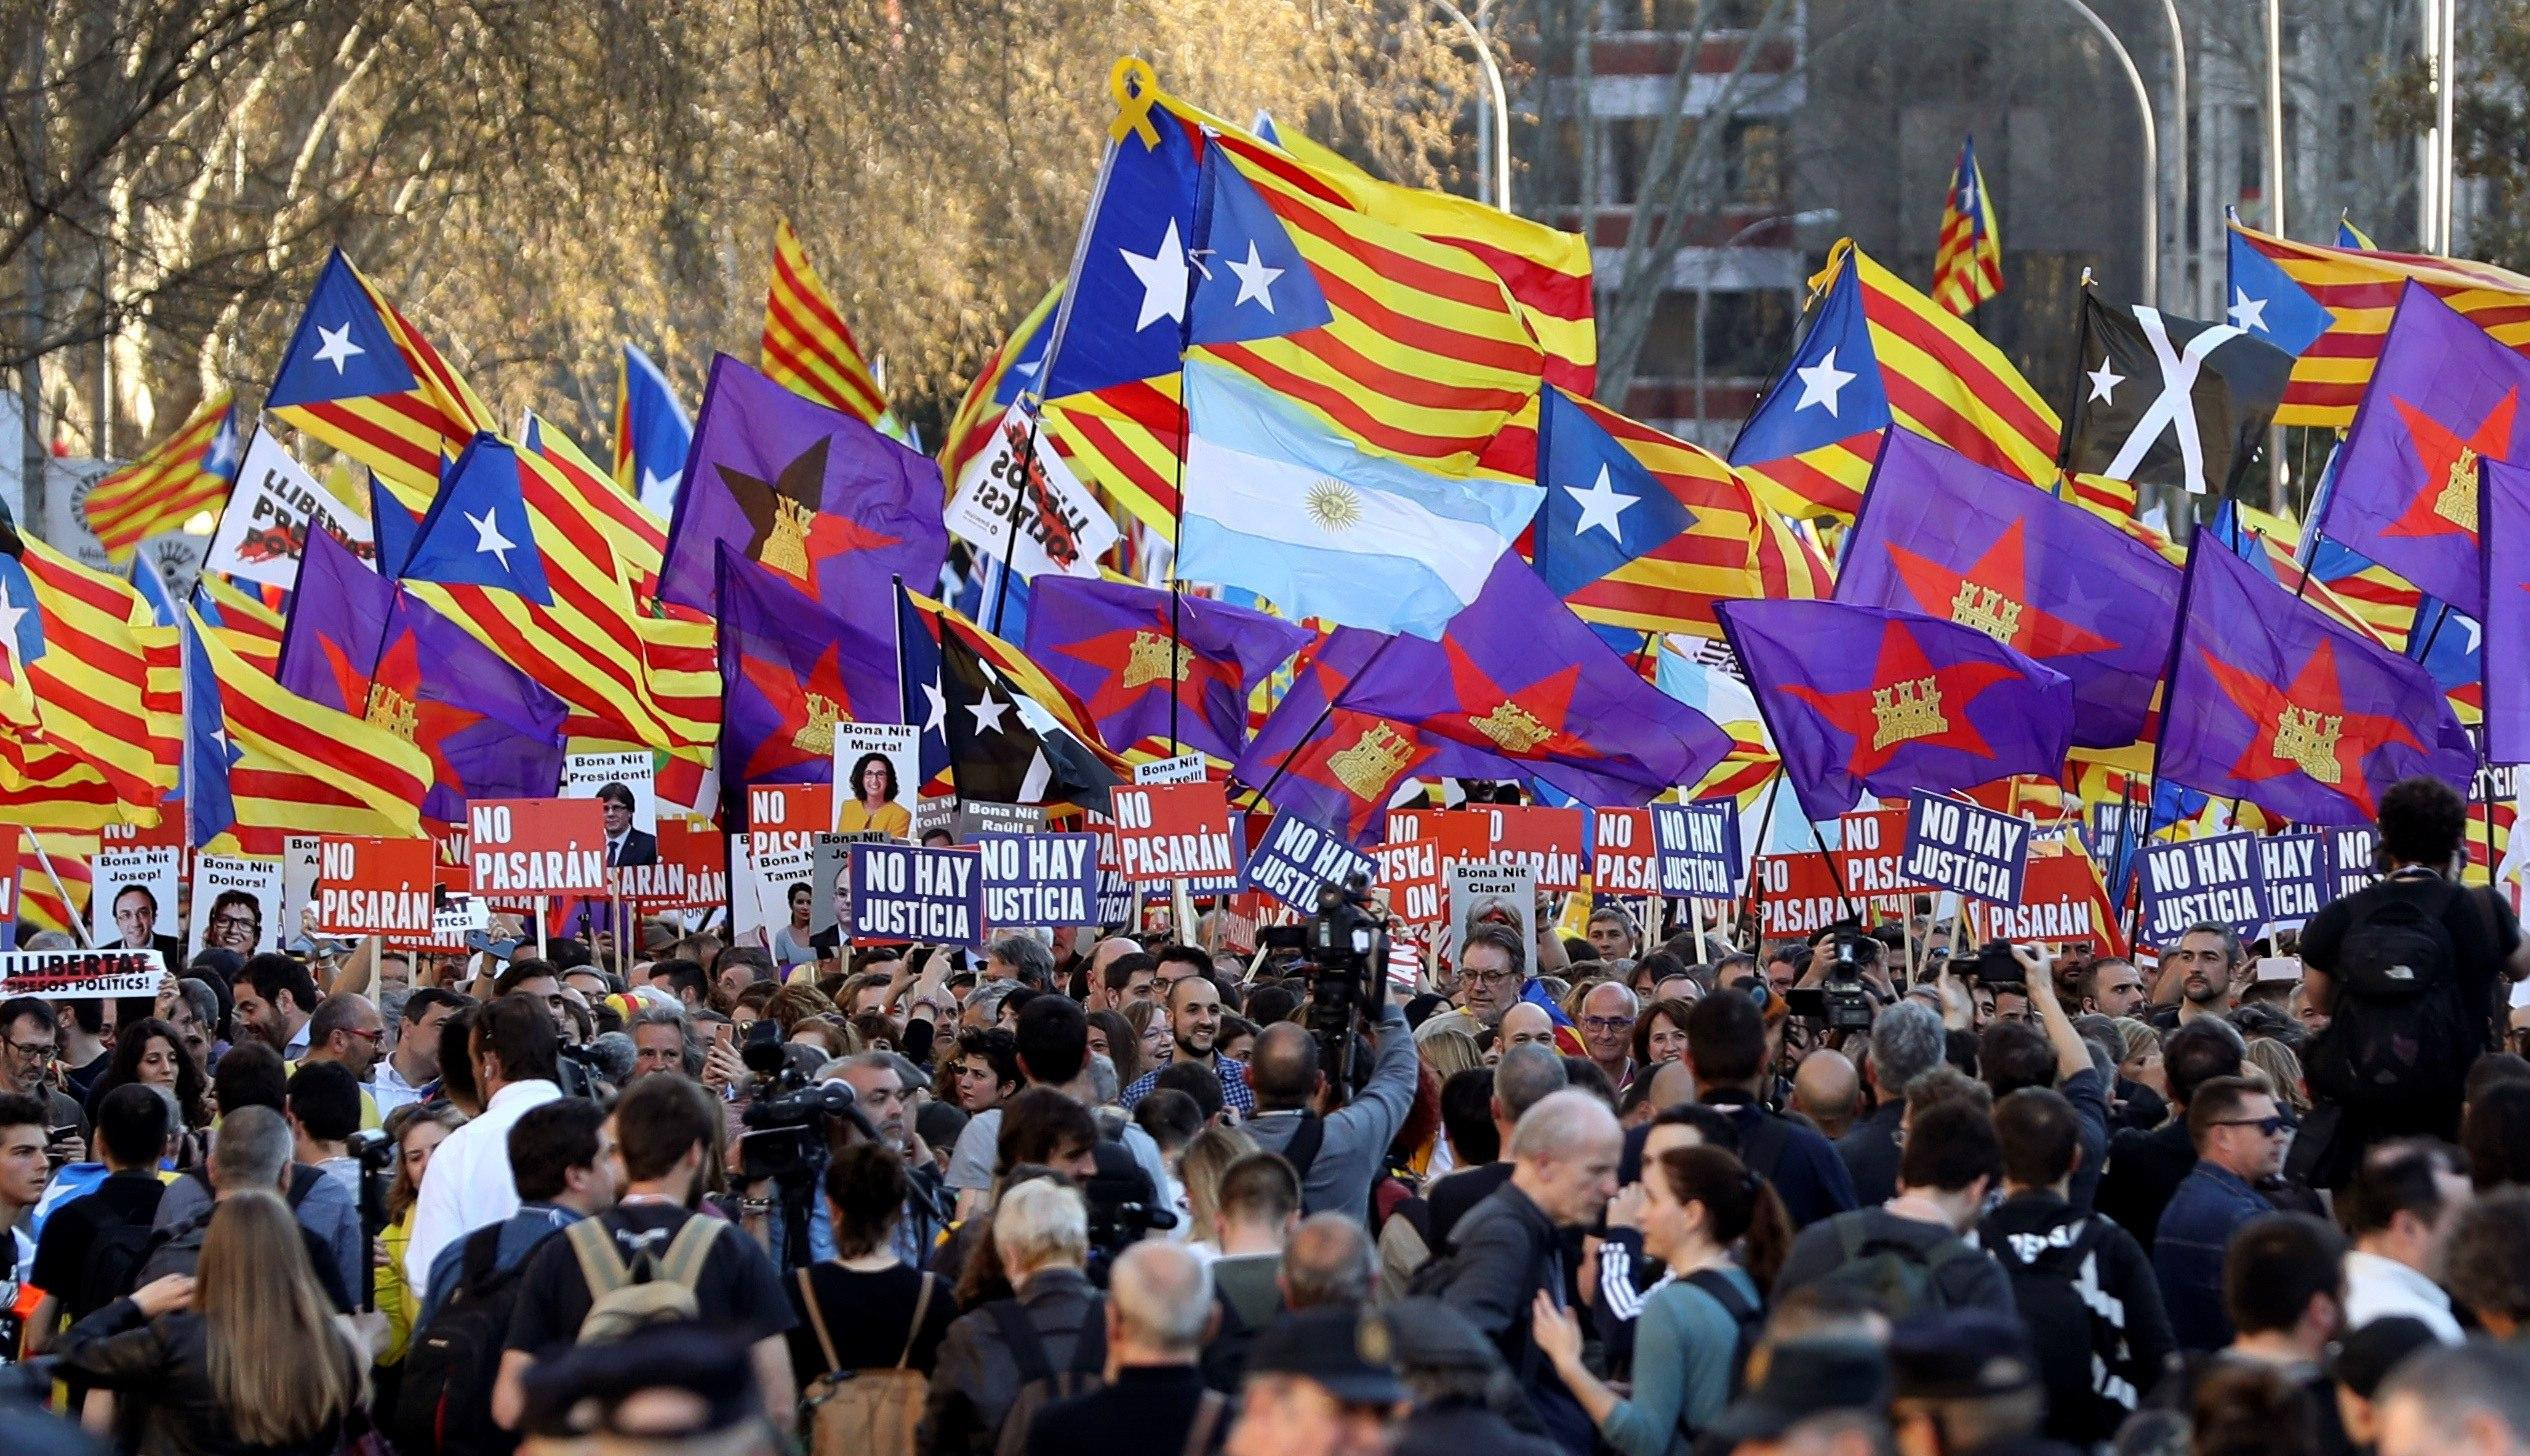 Izquierda Castellana, con sus banderas moradas estrelladas, apoyando la independencia de Cataluña en la manifestación del 16 de marzo en Madrid / EFE